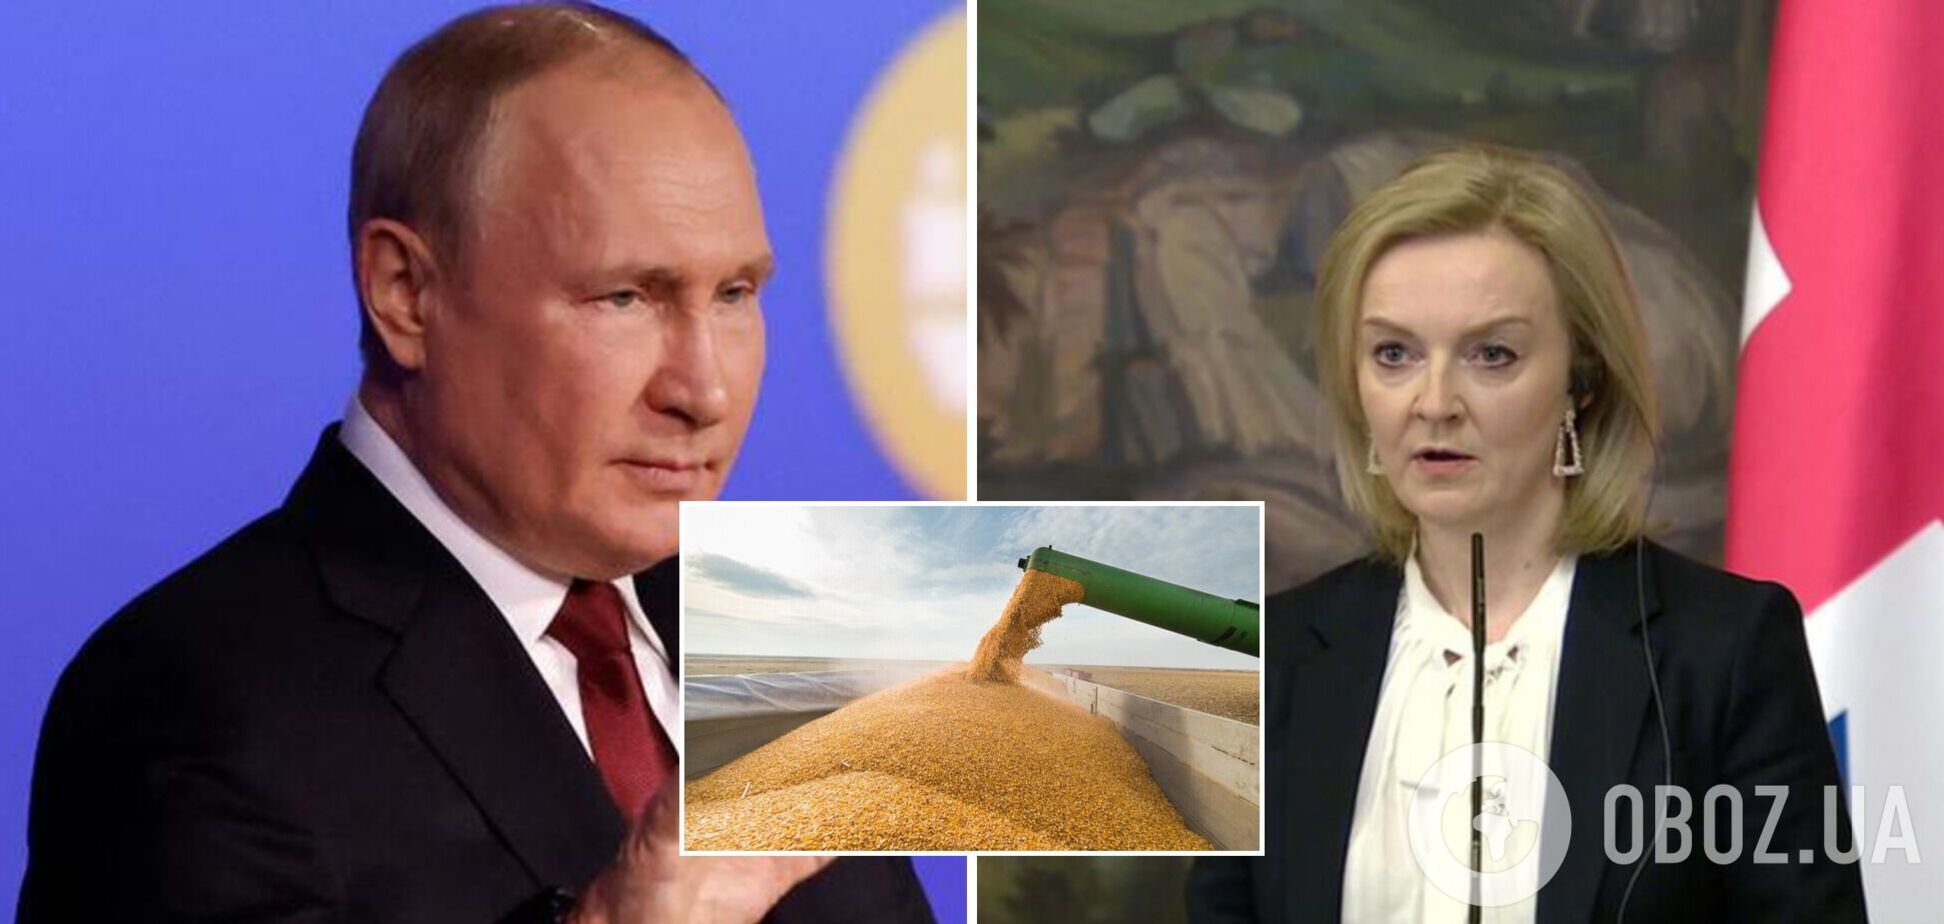 Трасс заявила, что Путин использует голод как оружие, и призвала срочно принять меры